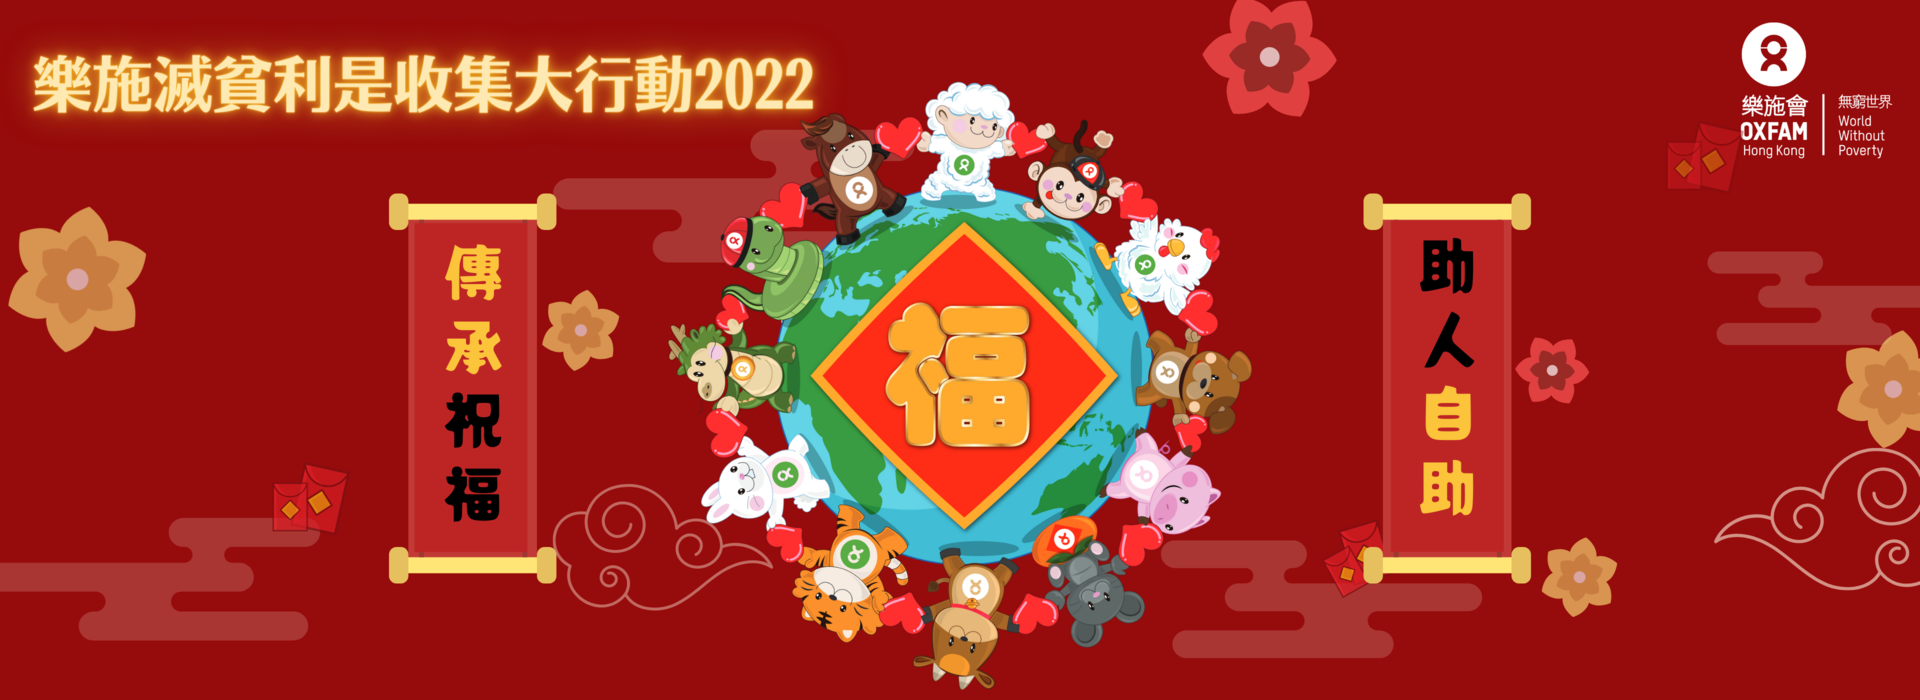 Laisee banner 2022 (Hong Kong)